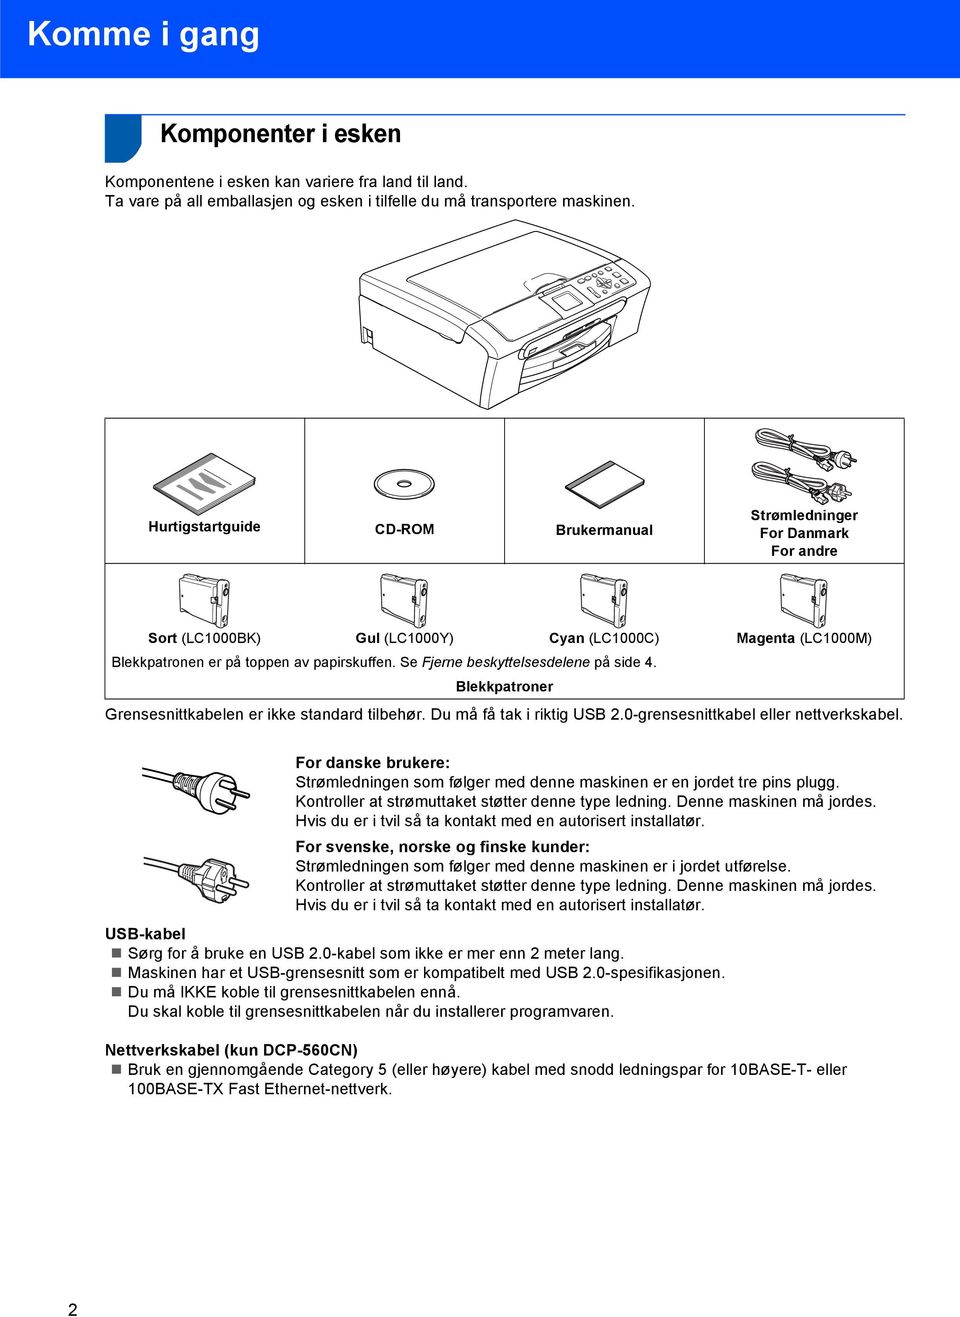 Se Fjerne beskyttelsesdelene på side 4. Blekkpatroner Grensesnittkabelen er ikke standard tilbehør. Du må få tak i riktig USB 2.0-grensesnittkabel eller nettverkskabel.